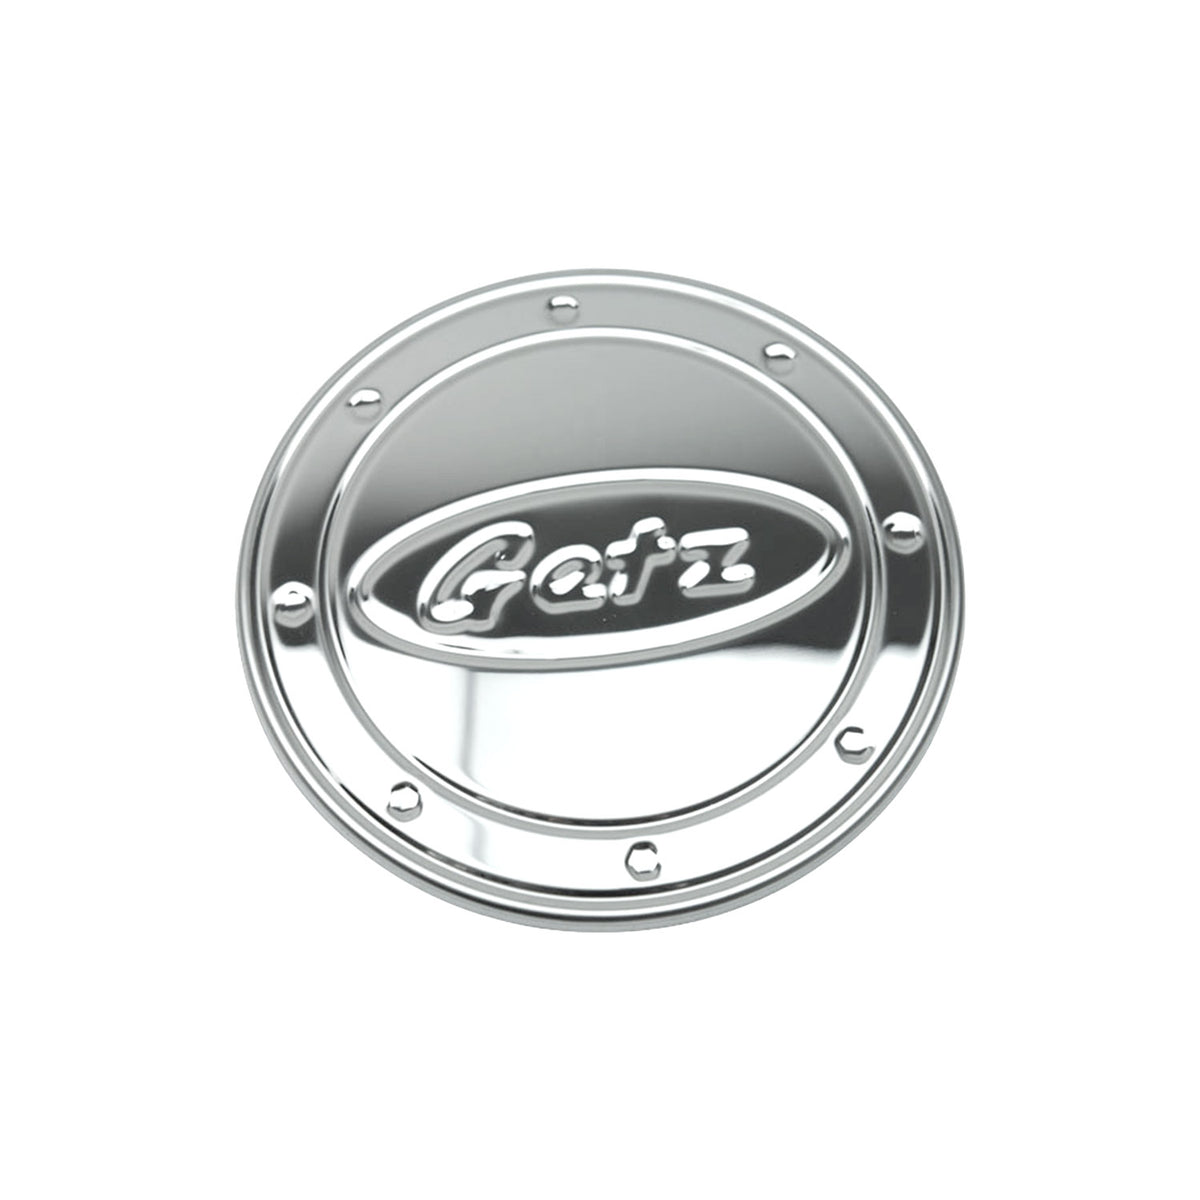 Bouchon De Carburant pour Hyundai Getz 2002-2011 Inox Chromé 1x